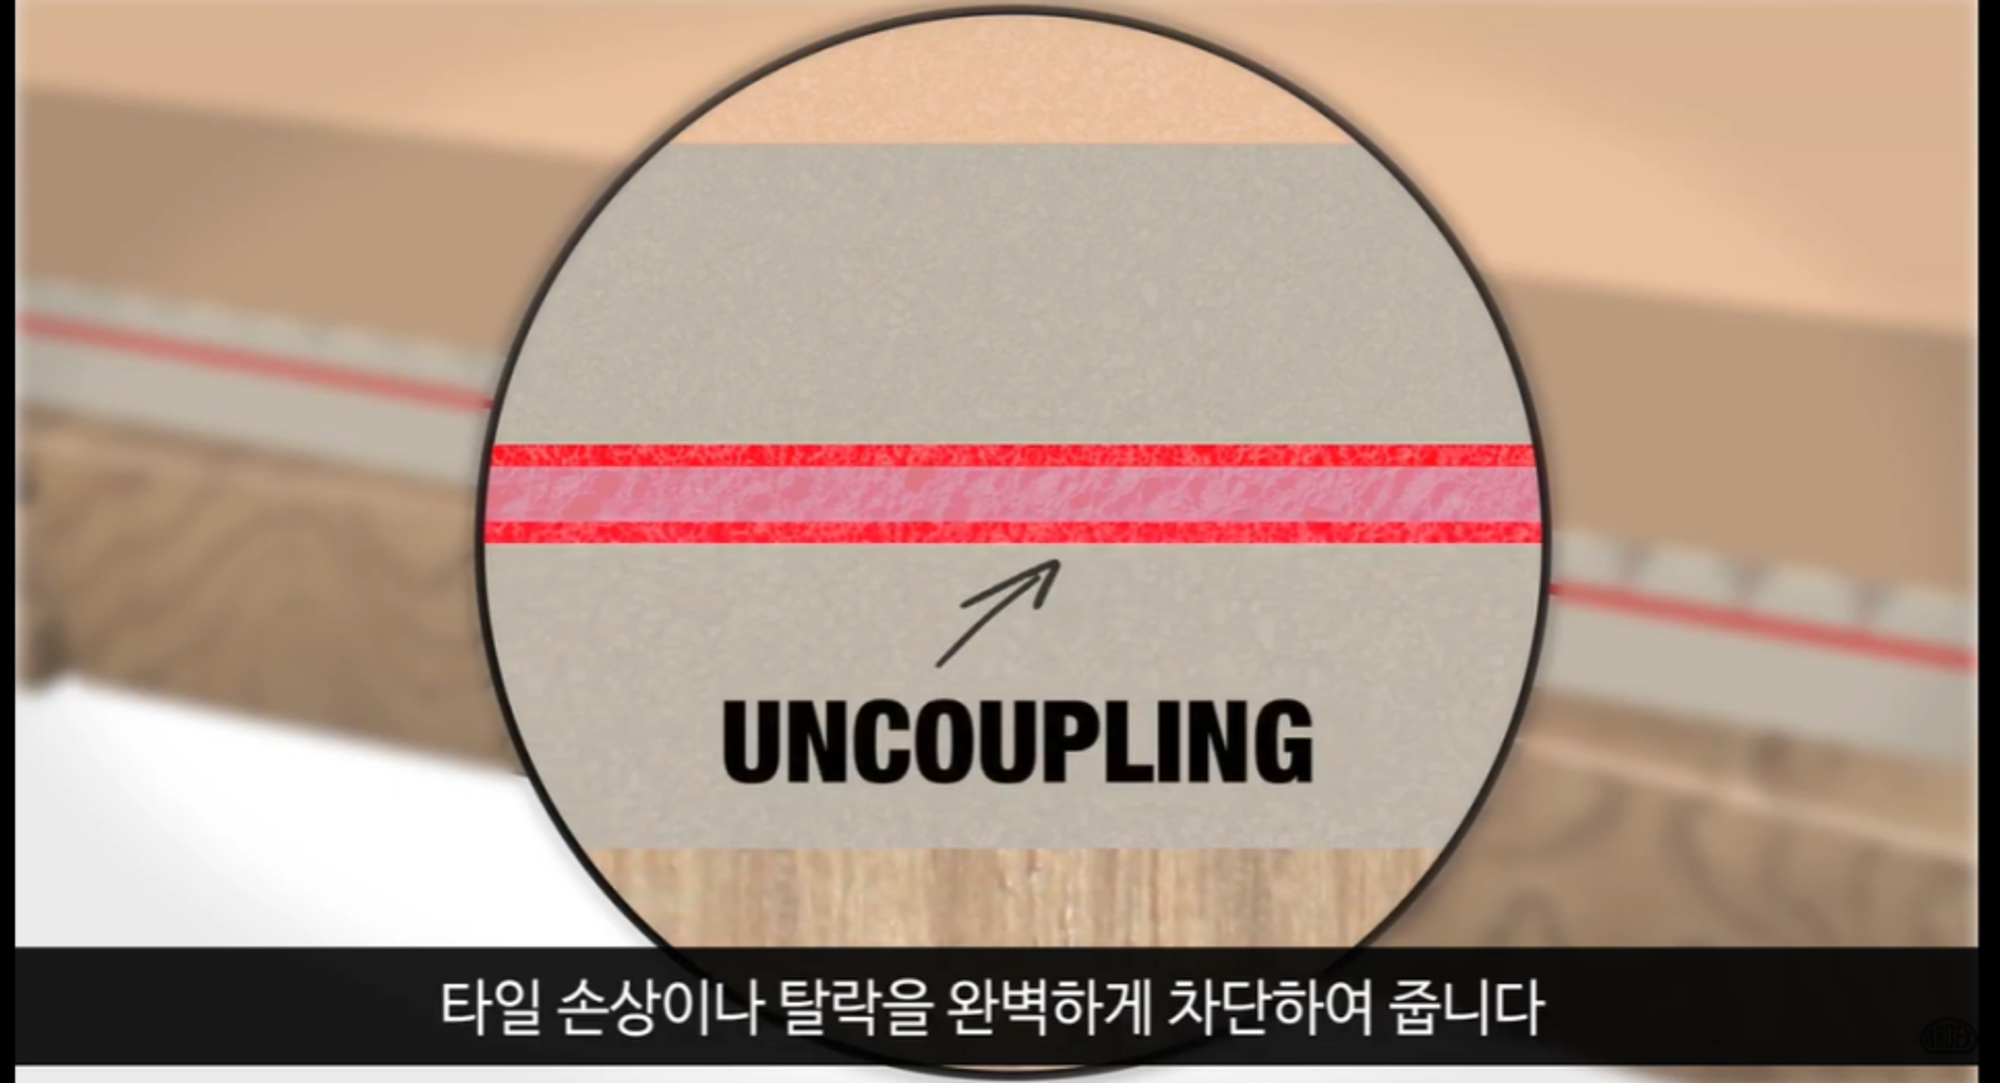 아덱스의 디커플링 매트는 수축 팽창을 견디는데 큰 도움을 줍니다. / 출처 : 한국아덱스